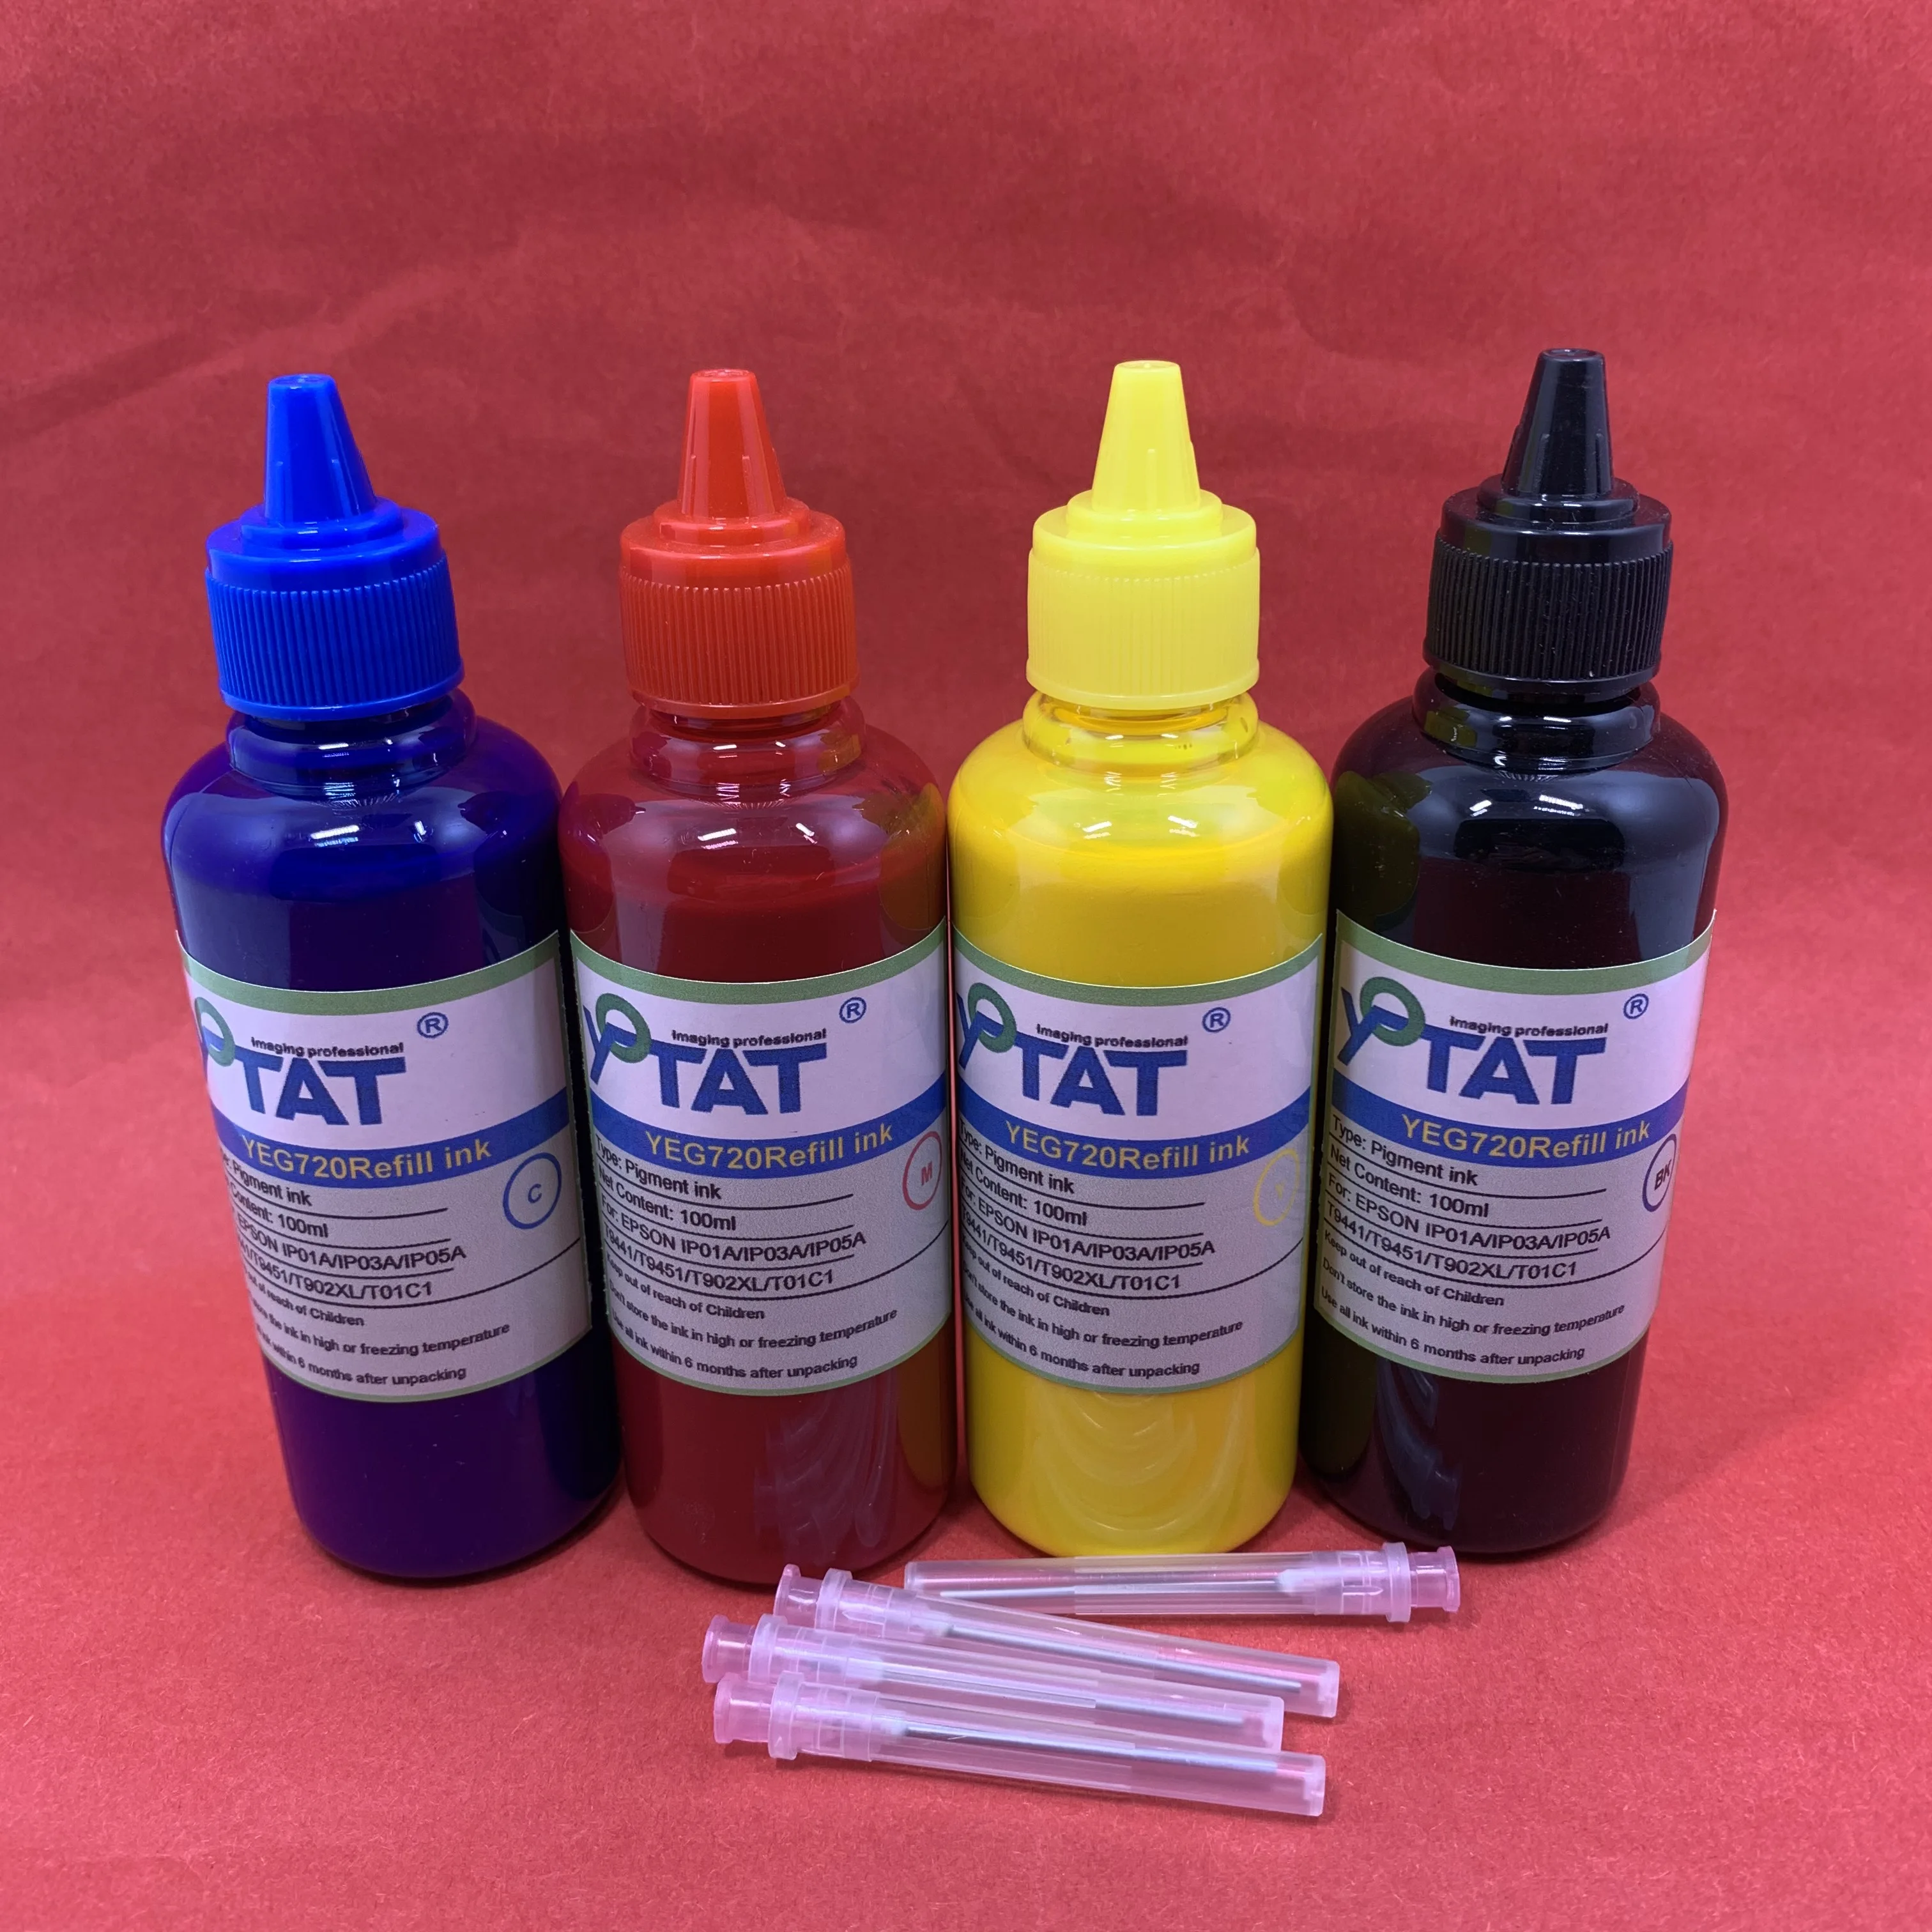 YOTAT T802 T802XL Pigment Ink Or Dye Ink For Epson Workforce WF-4720 WF-4730 WF-4734 WF-4740 EC-4020 EC-4030 EC-4040